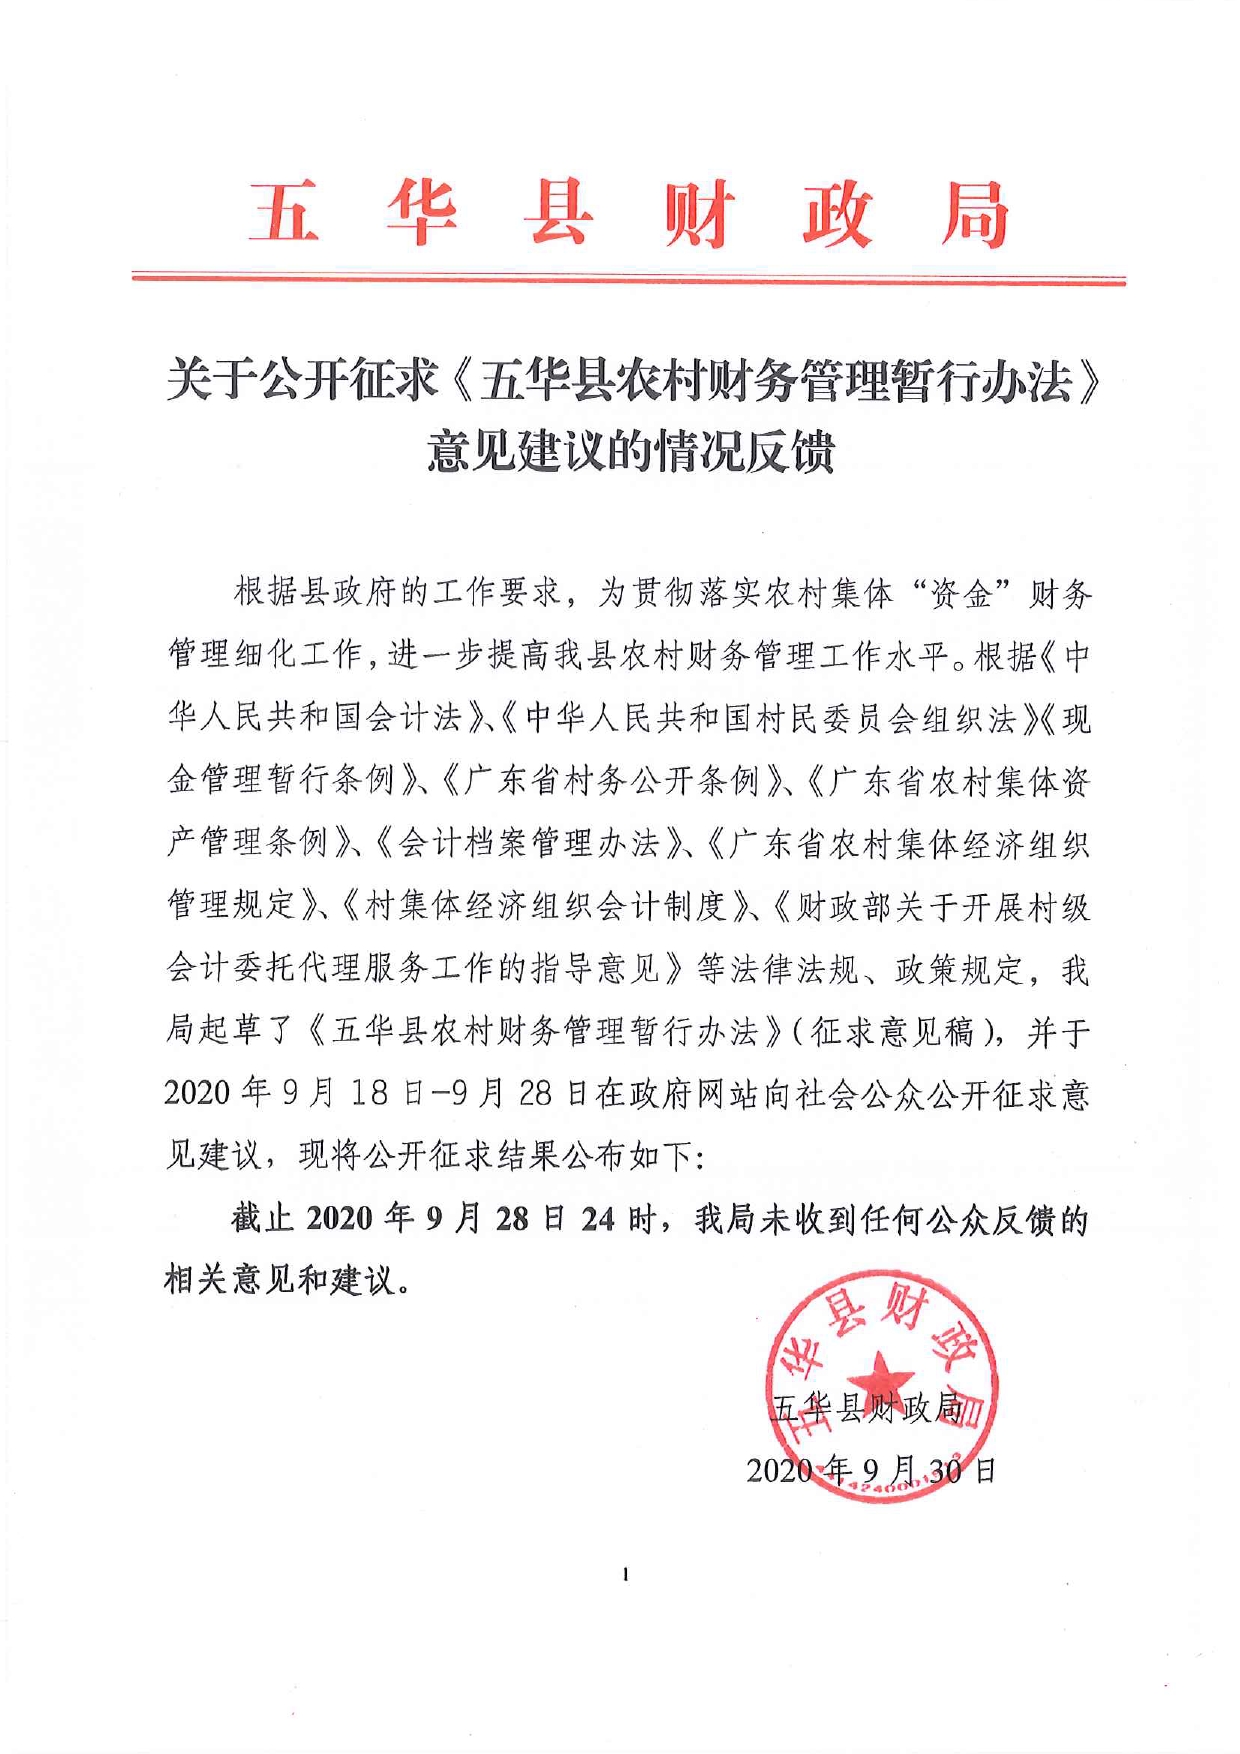 关于公开征求《五华县农村财务管理暂行办法》意见建议的情况反馈0000.jpg